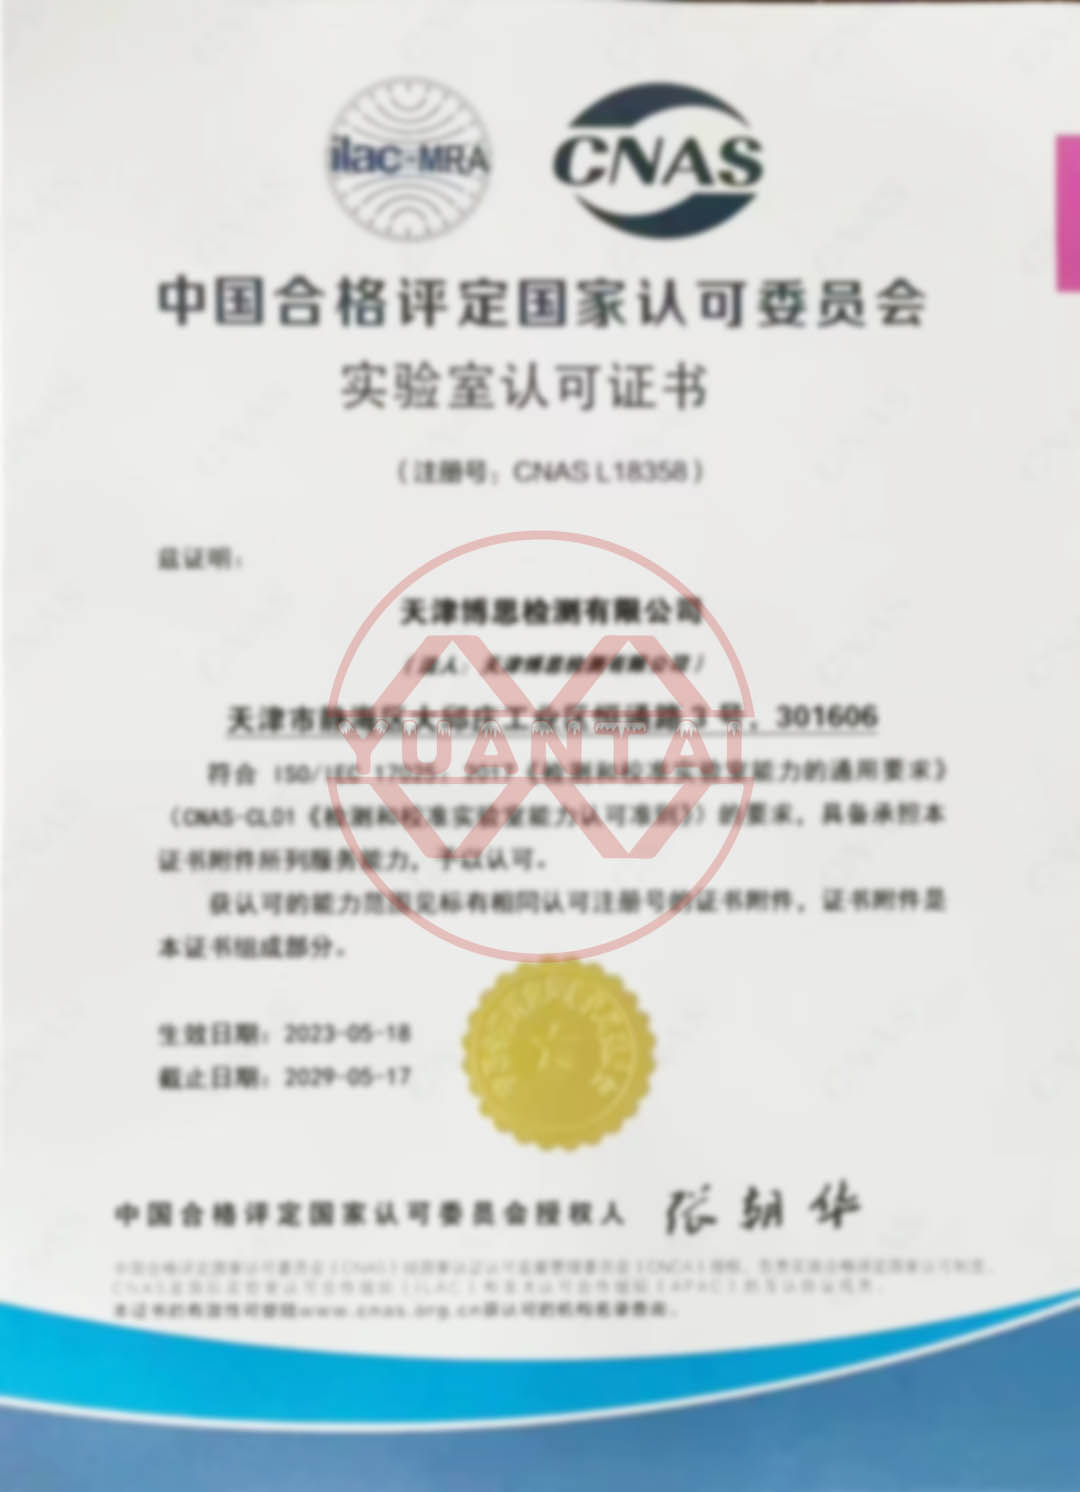 Felicitats a Tianjin Bosi Testing Co., Ltd., una filial de Yuantai Derun Steel Pipe Group, per aprovar la certificació CNAS.